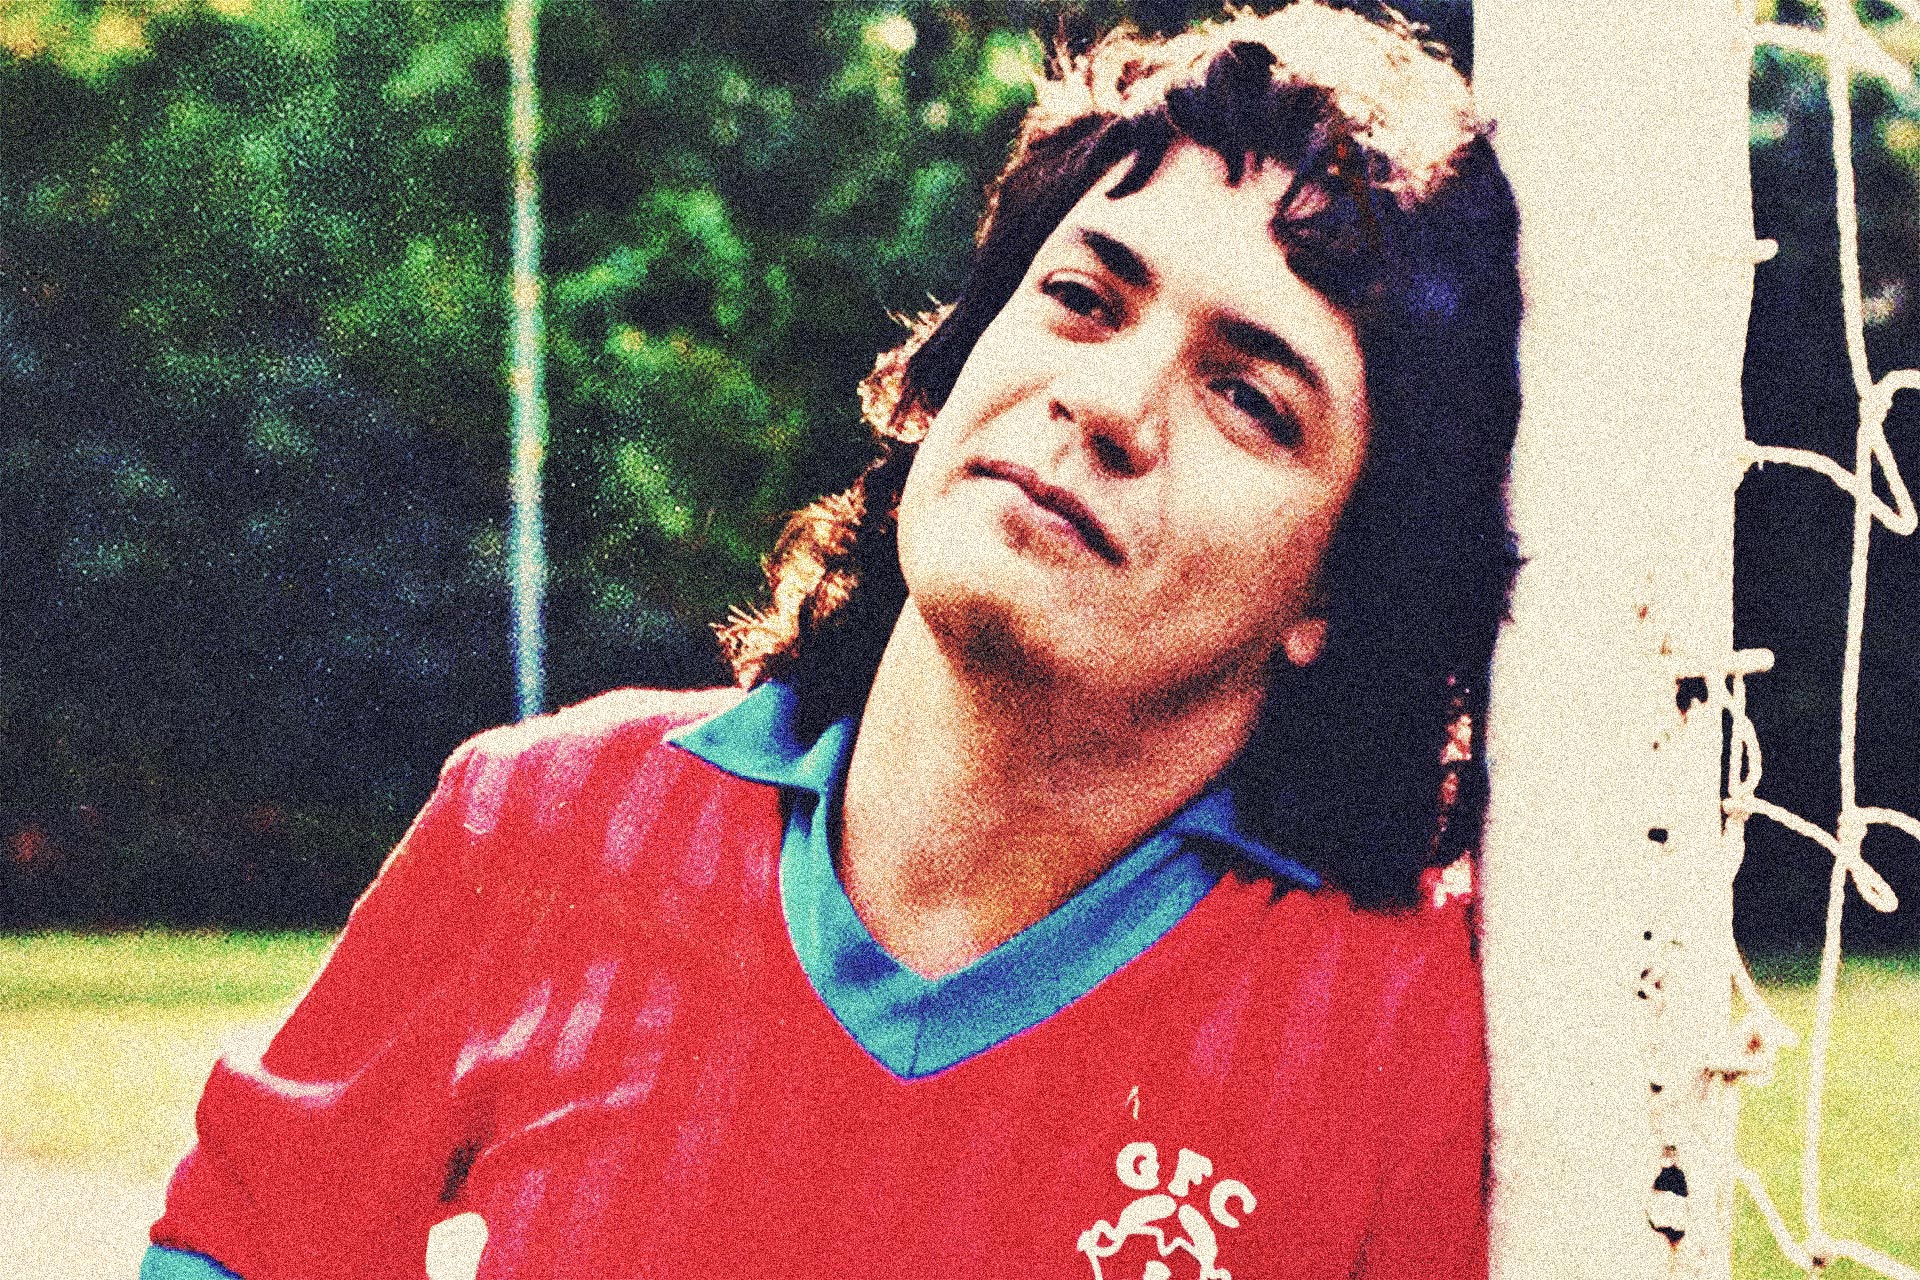 Carlos Kaiser